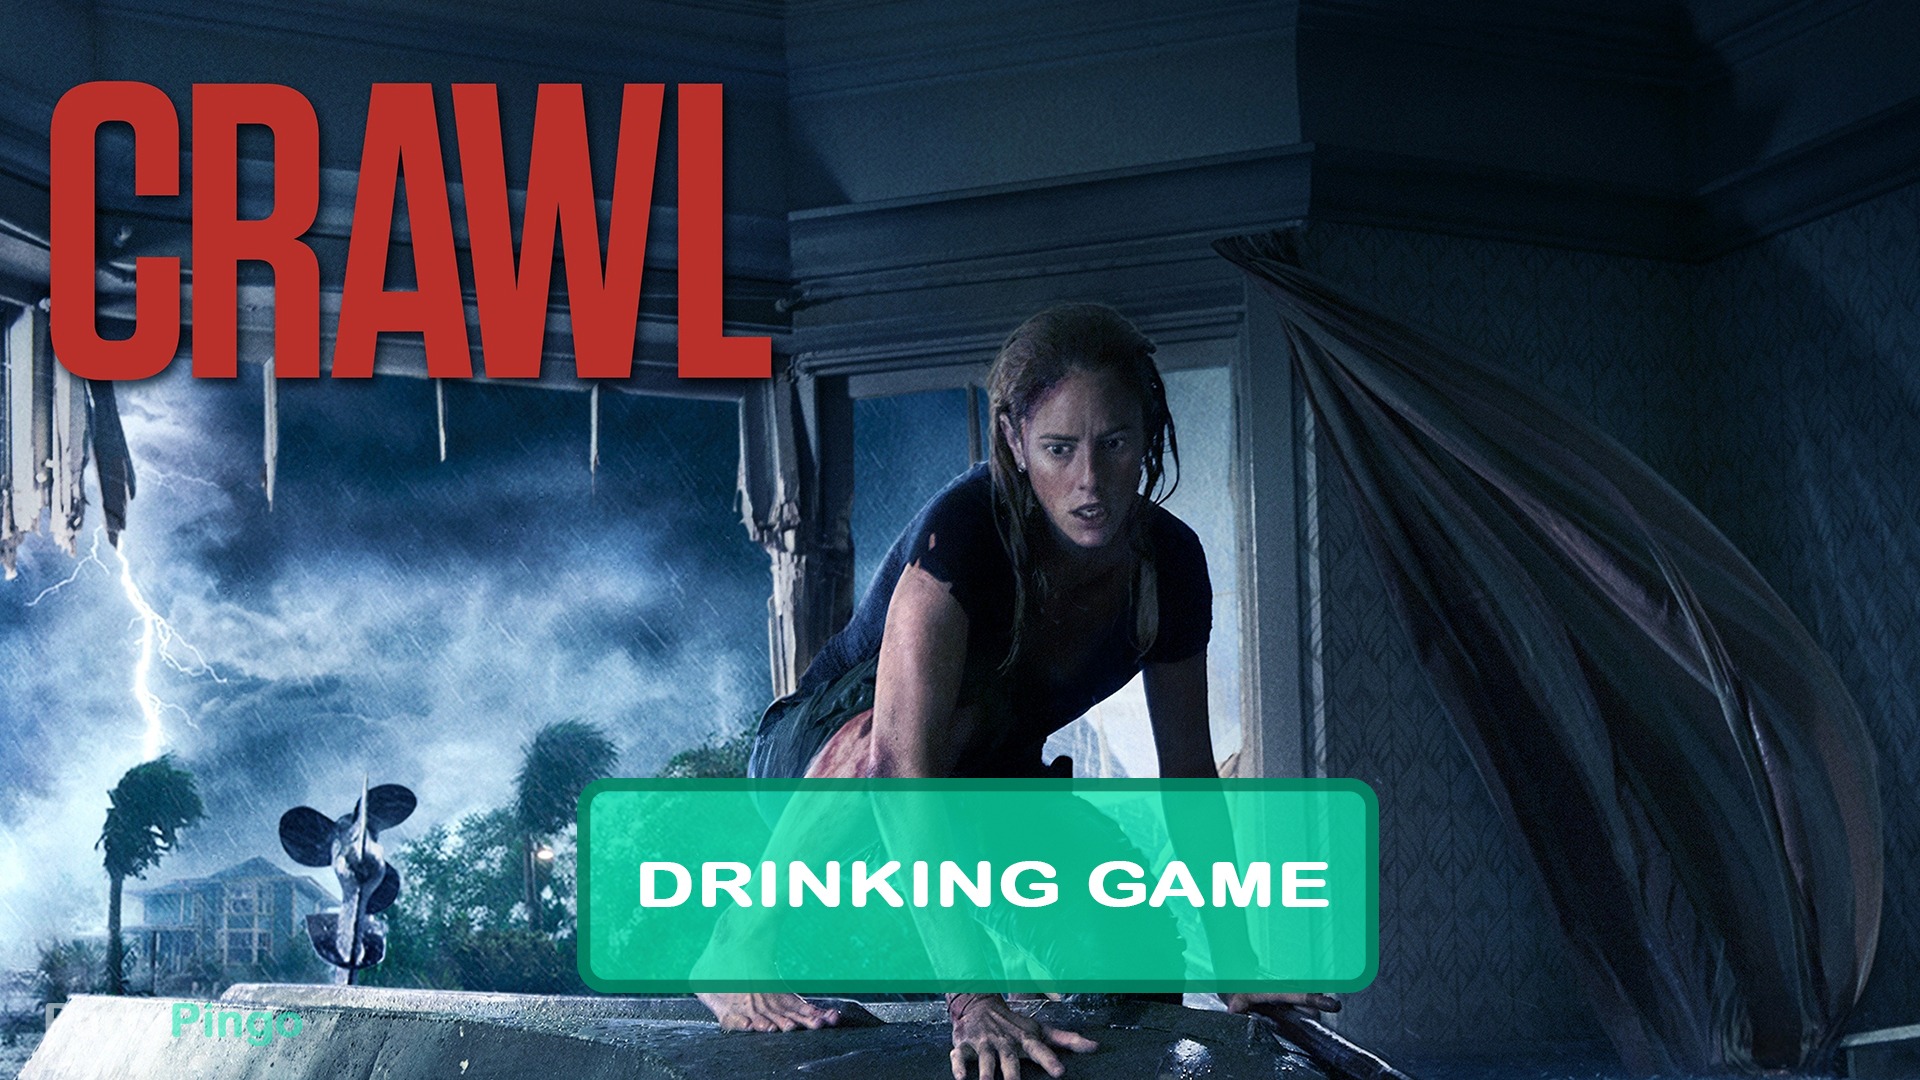 Crawl (2019) Drinking Game